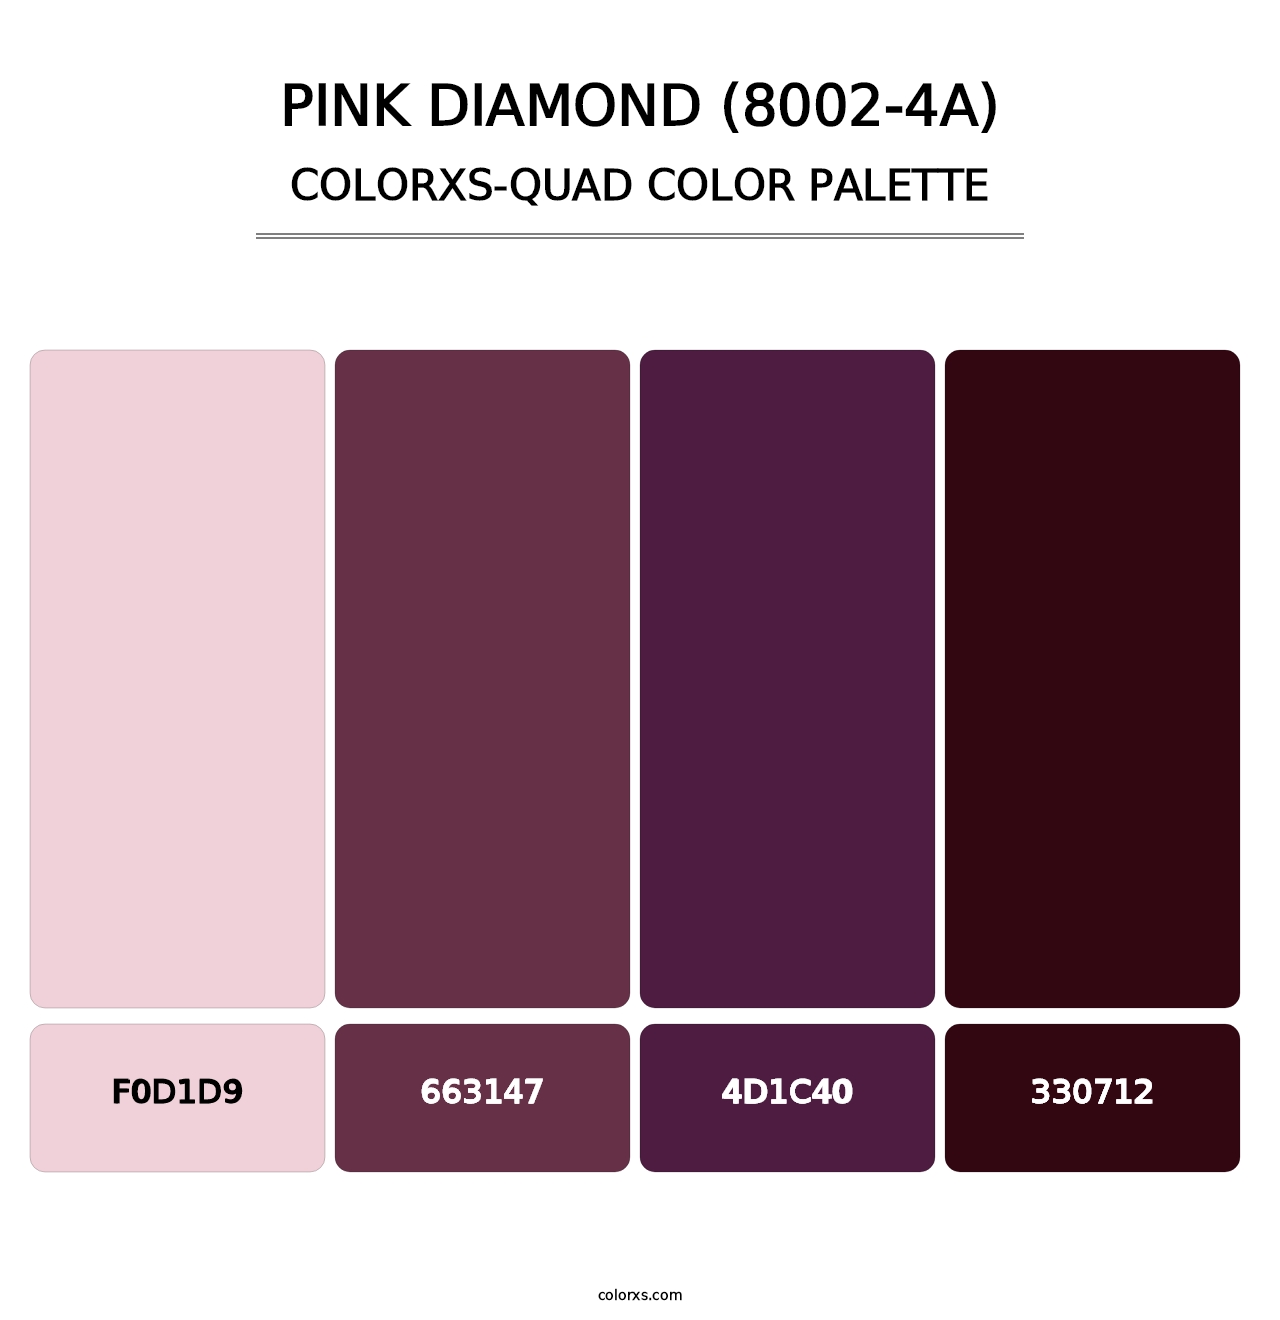 Pink Diamond (8002-4A) - Colorxs Quad Palette